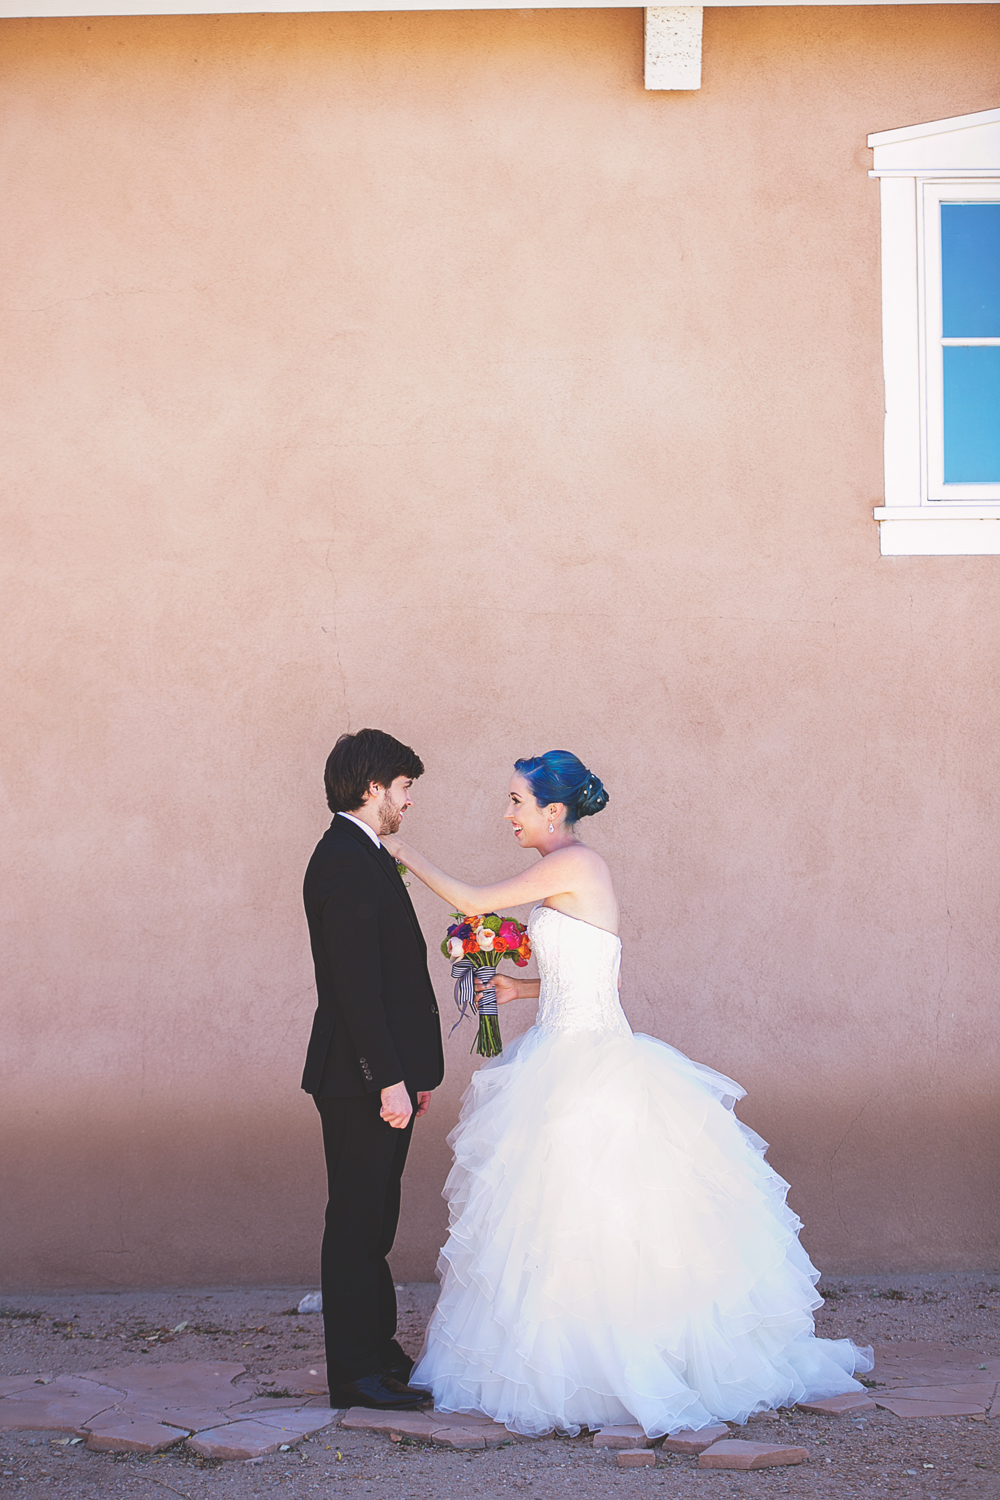 Hotel Albuquerque Wedding by Liz Anne Photography_025.jpg